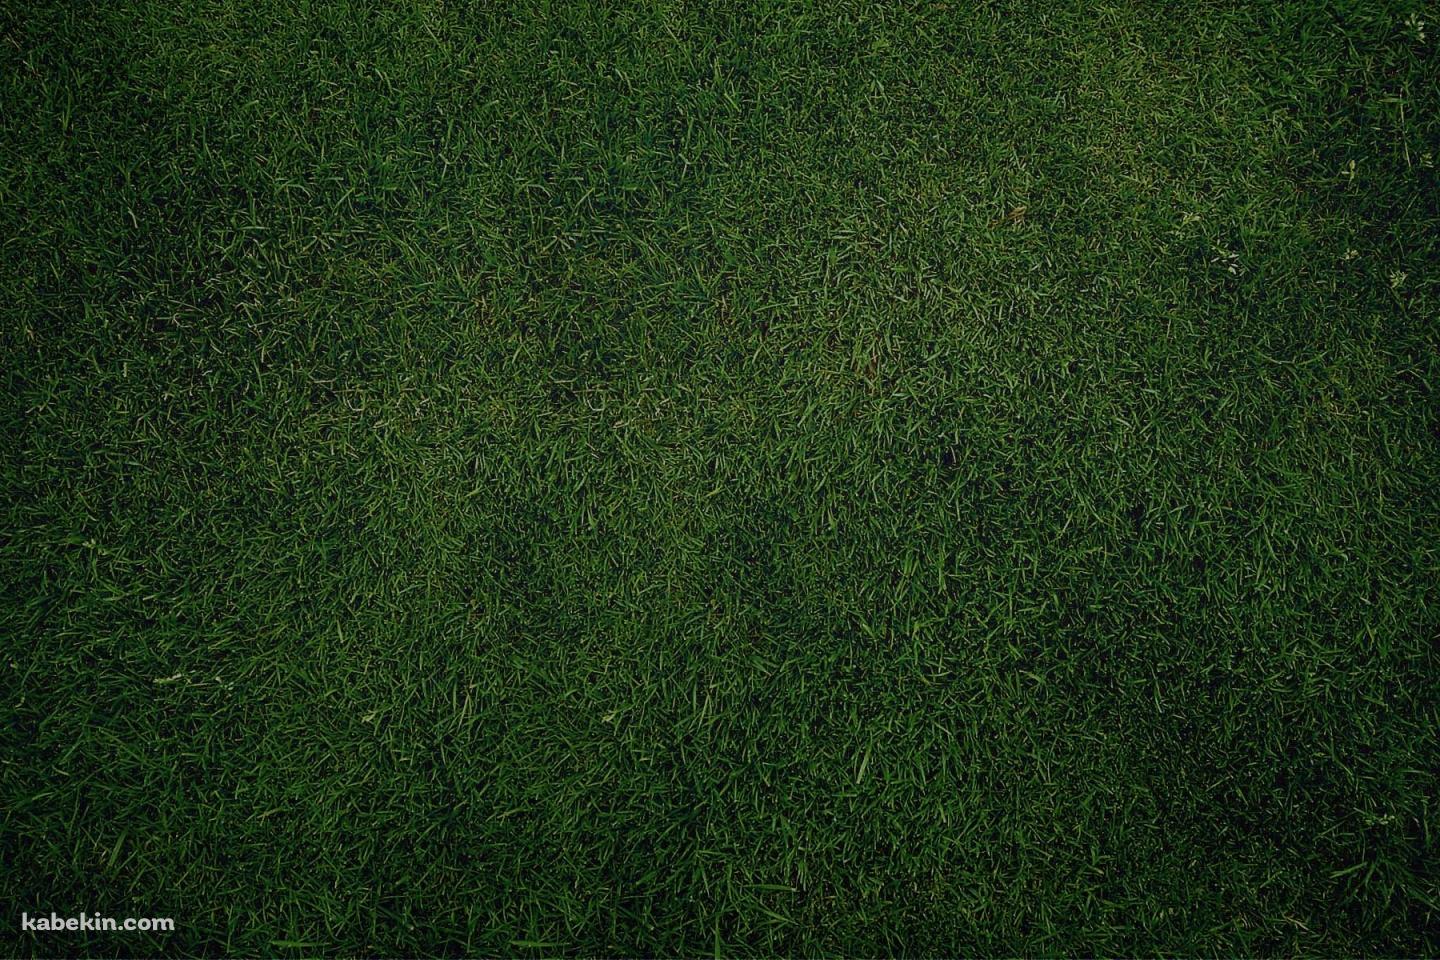 緑の芝生の壁紙(1440px x 960px) 高画質 PC・デスクトップ用